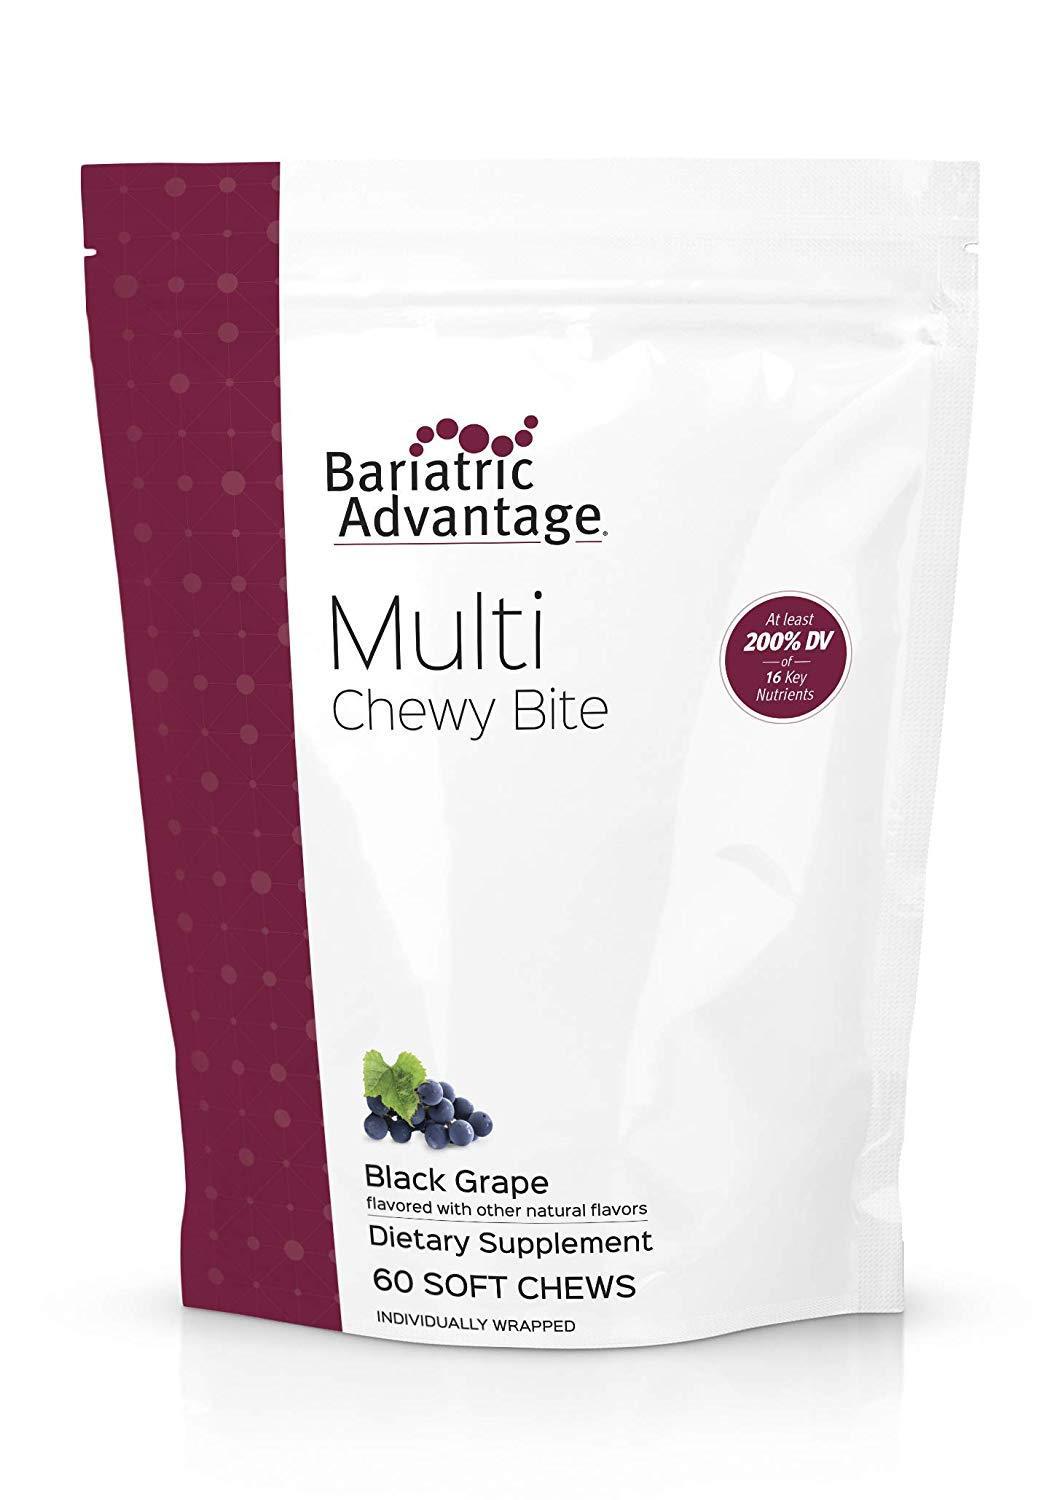 Bariatric Advantage - Multi Chewy Bite - Black Grape, 60 Count